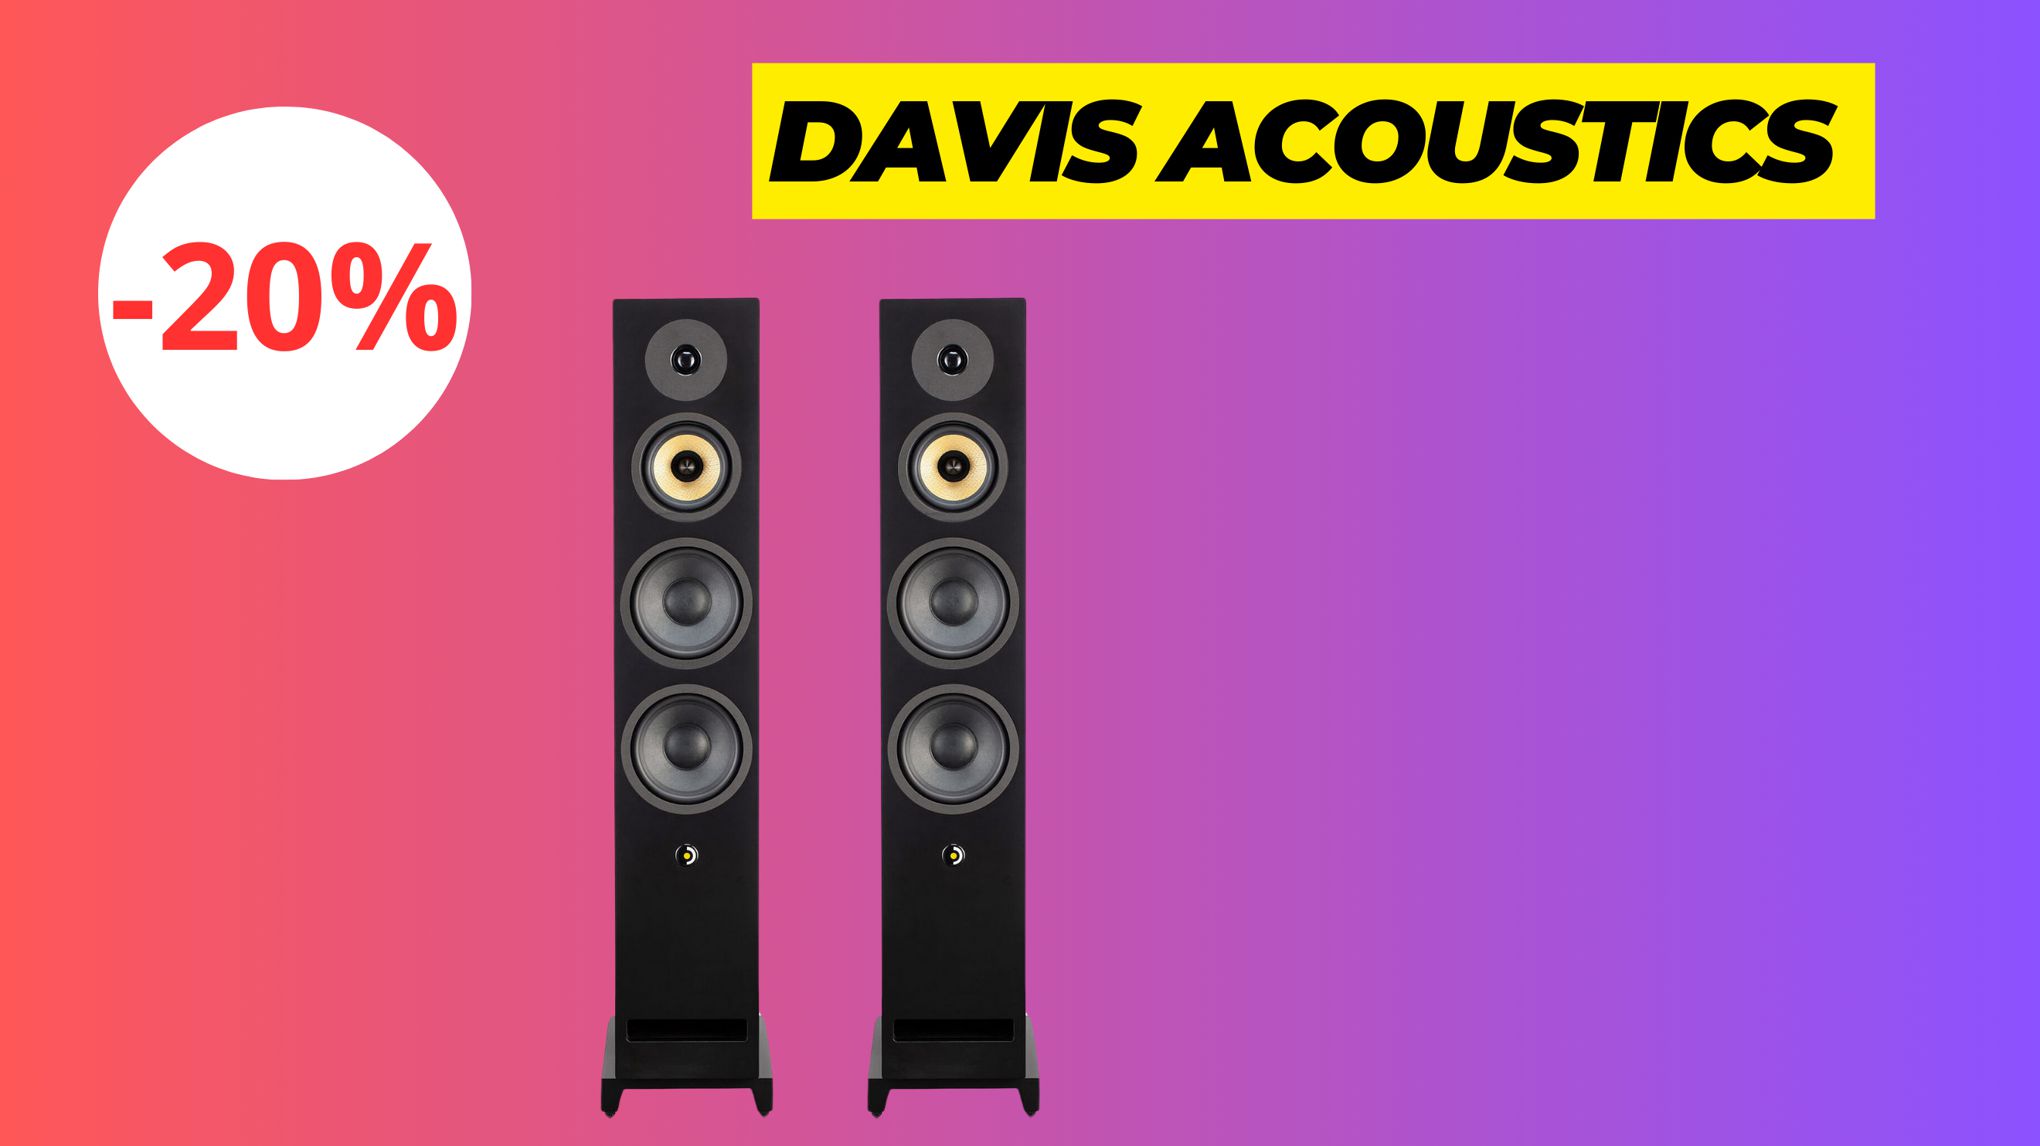 Marre de vos vieilles enceintes? Jetez-vous sur les Davis Acoustics en promo!